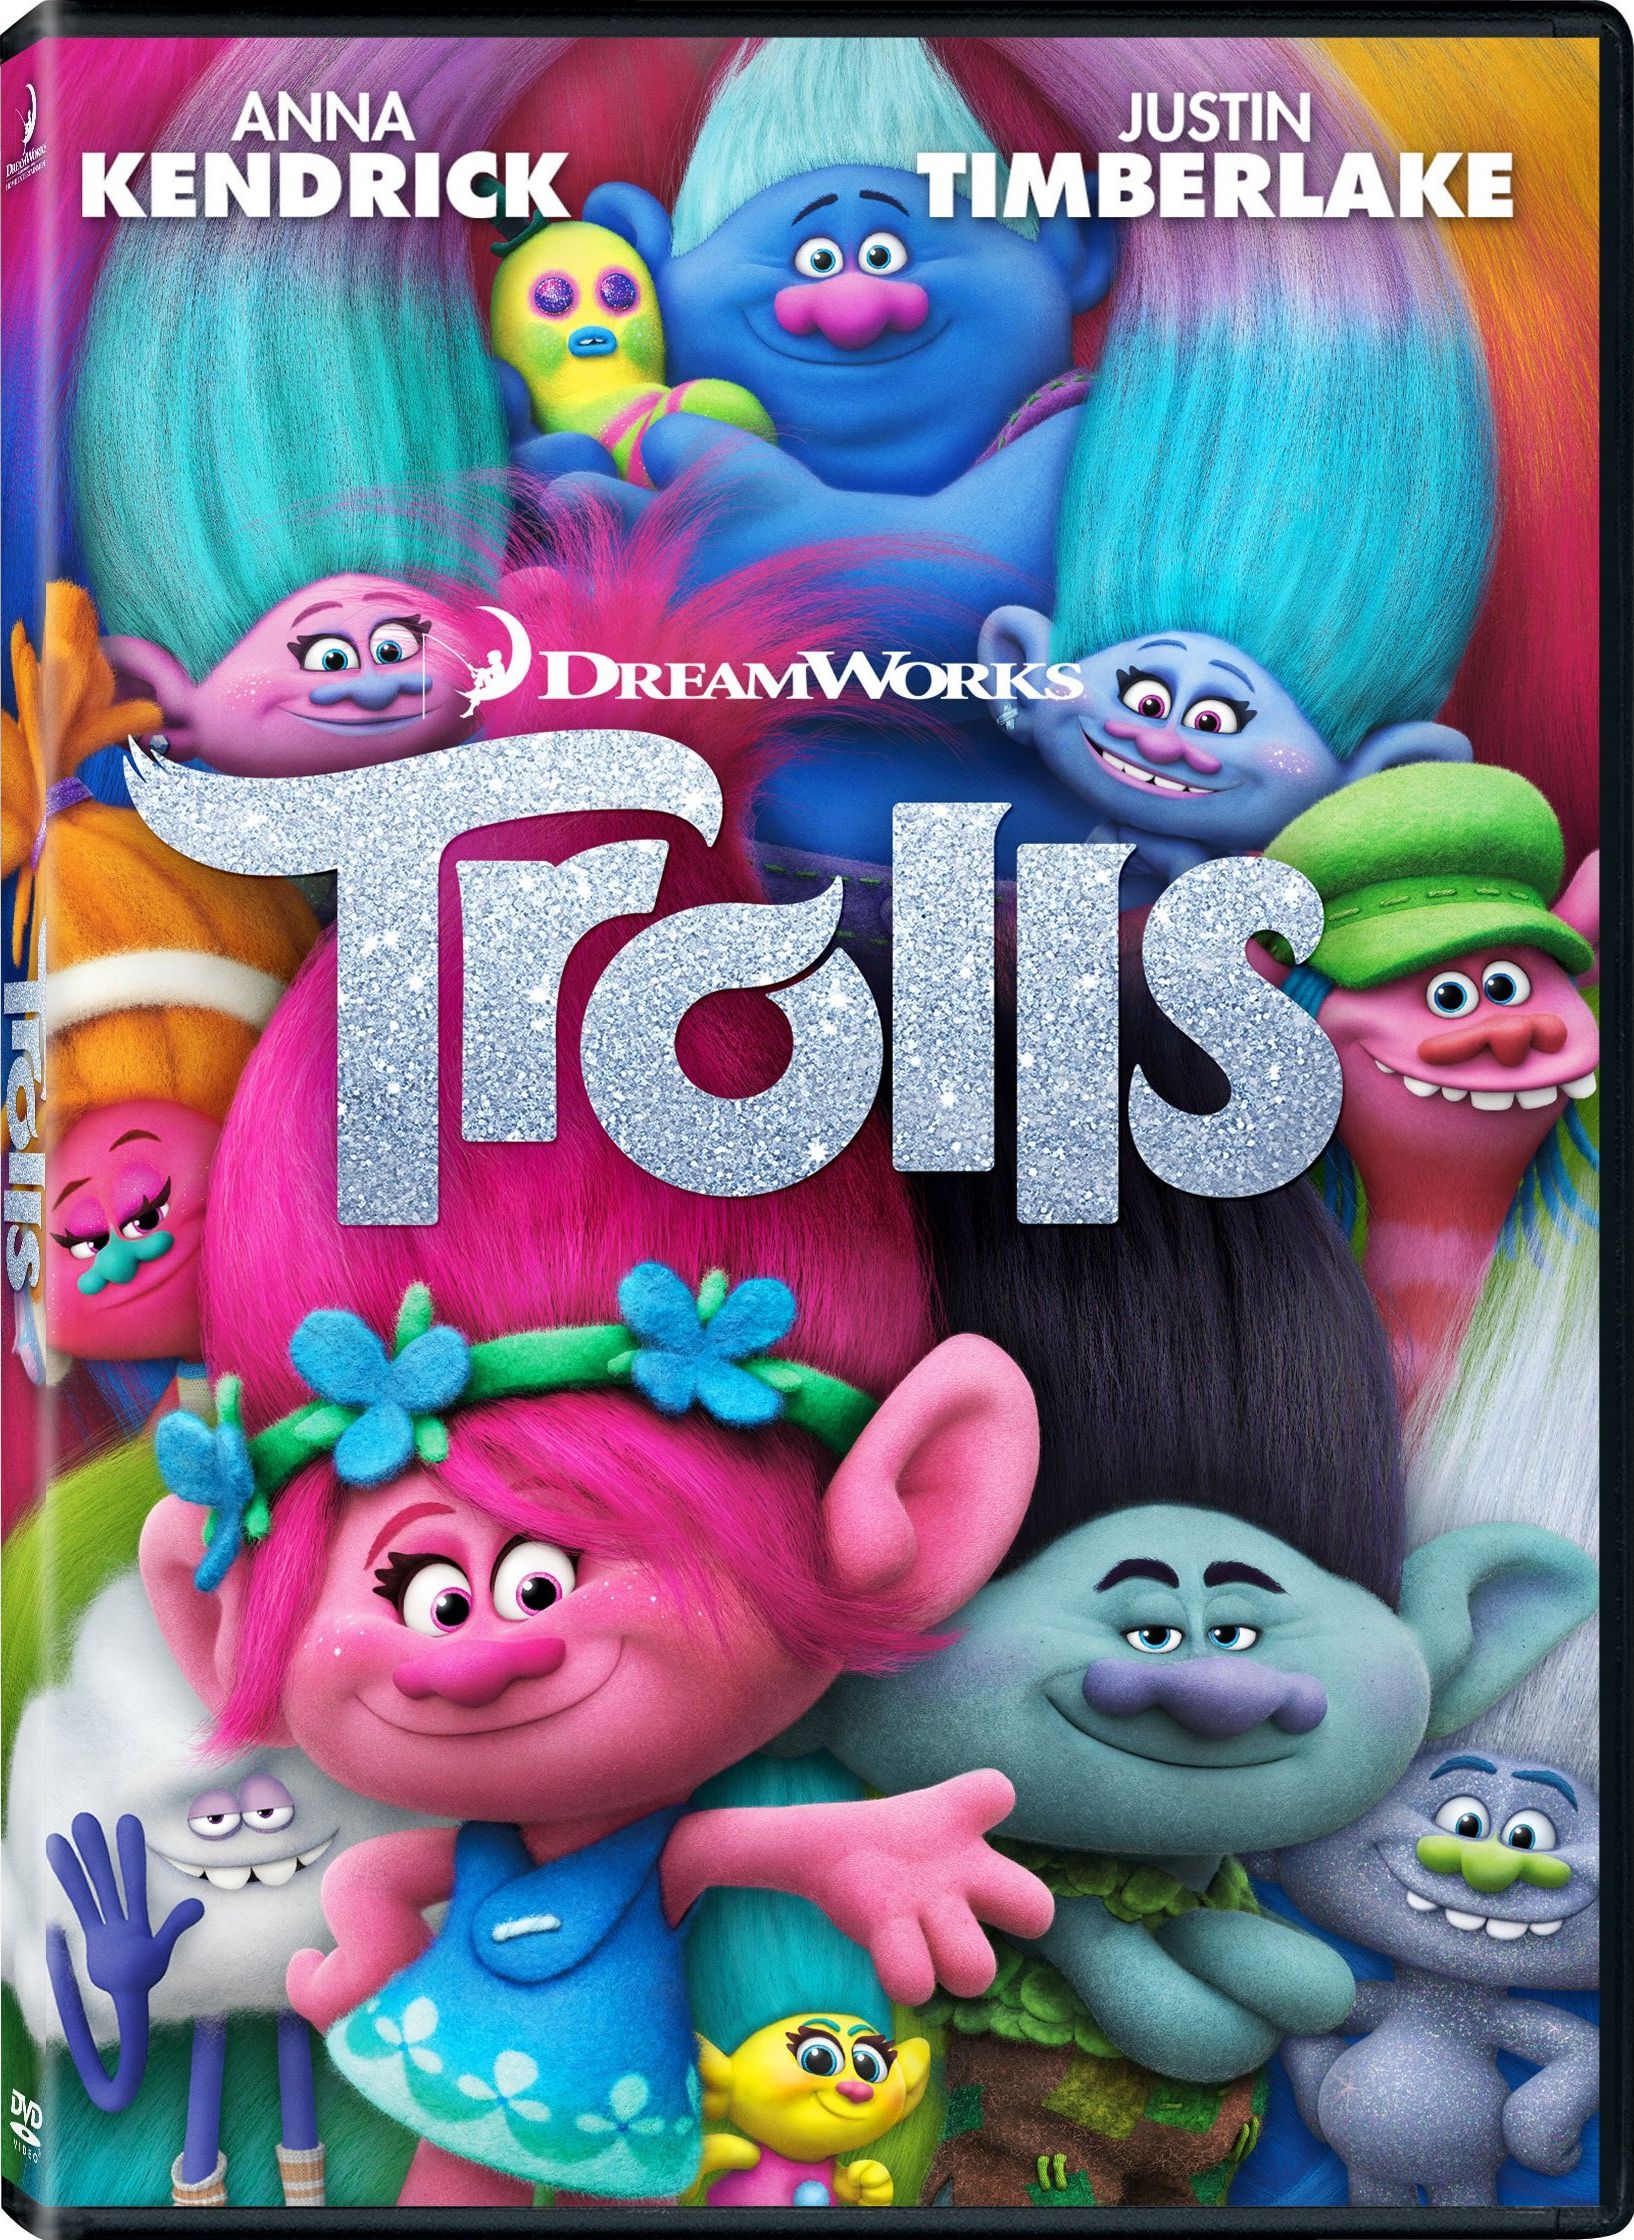 Trolls DVD Release Date February 7, 2017